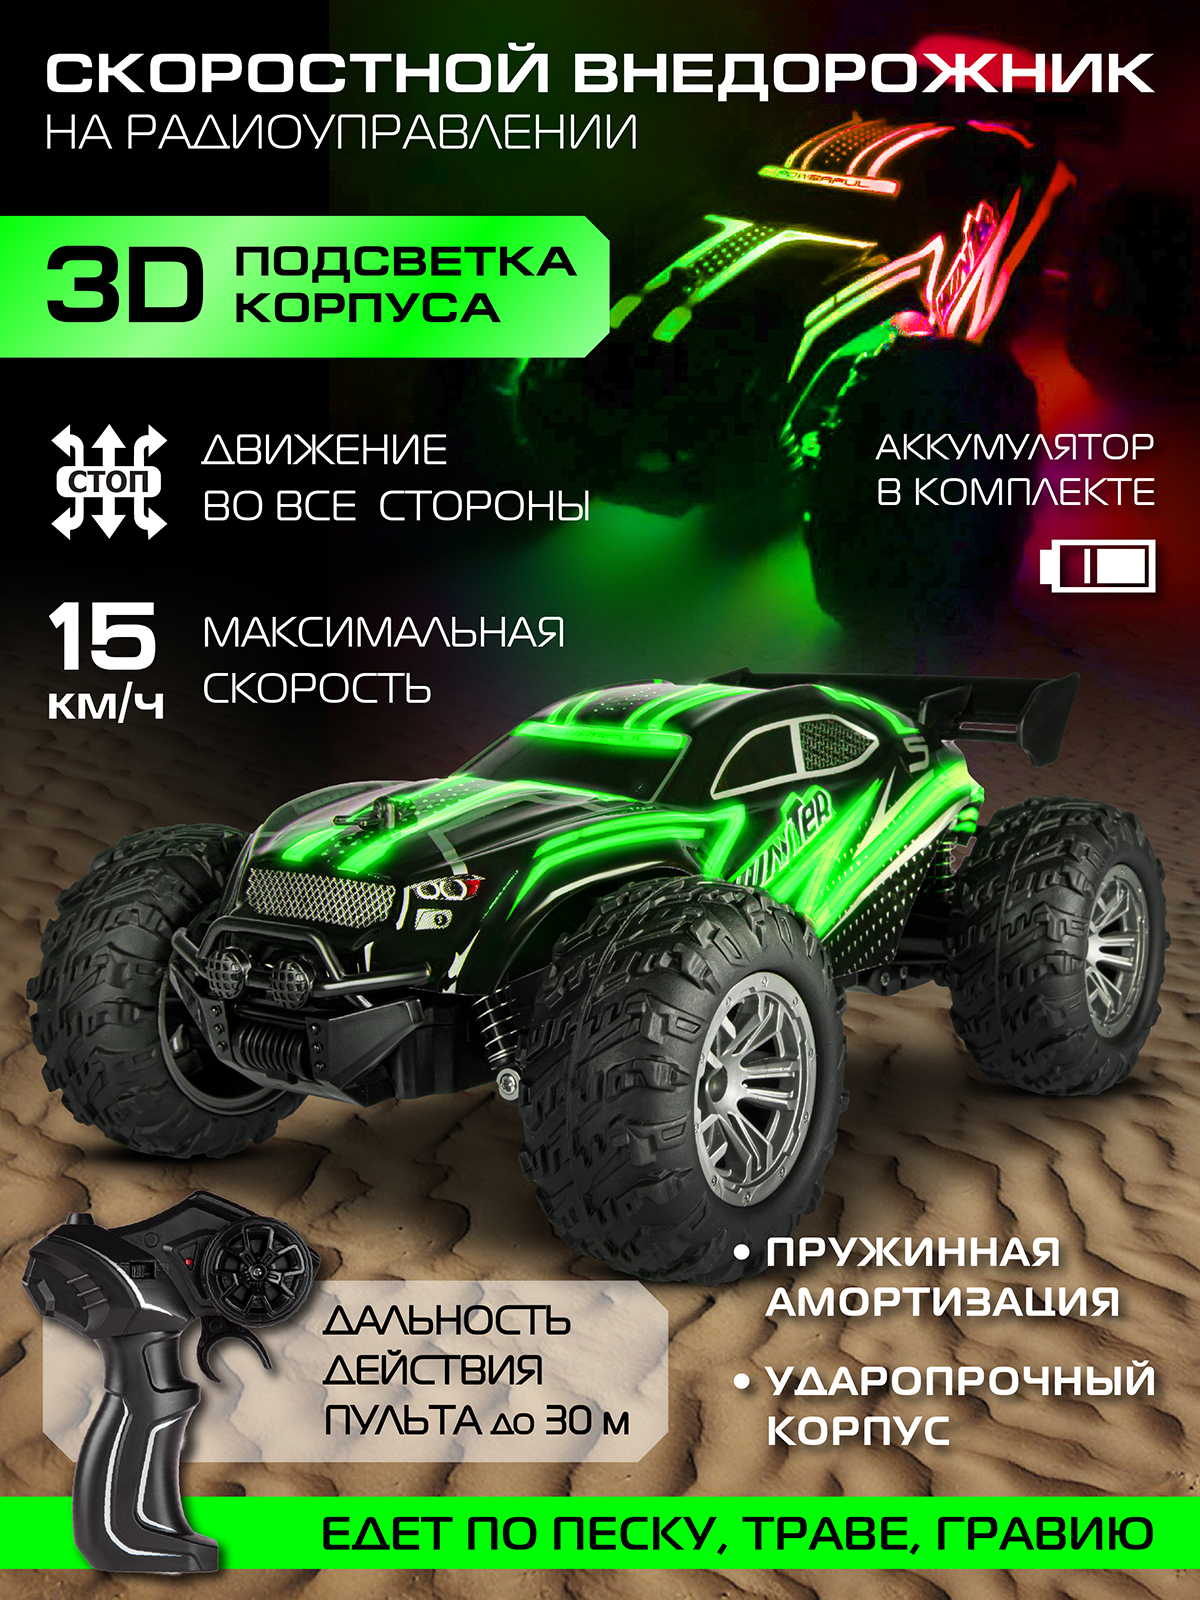 Игрушка на радиоуправлении AUTODRIVE Скоростной внедорожник с подсветкой скорость до 15 км/ч цвет зеленый - фото 2